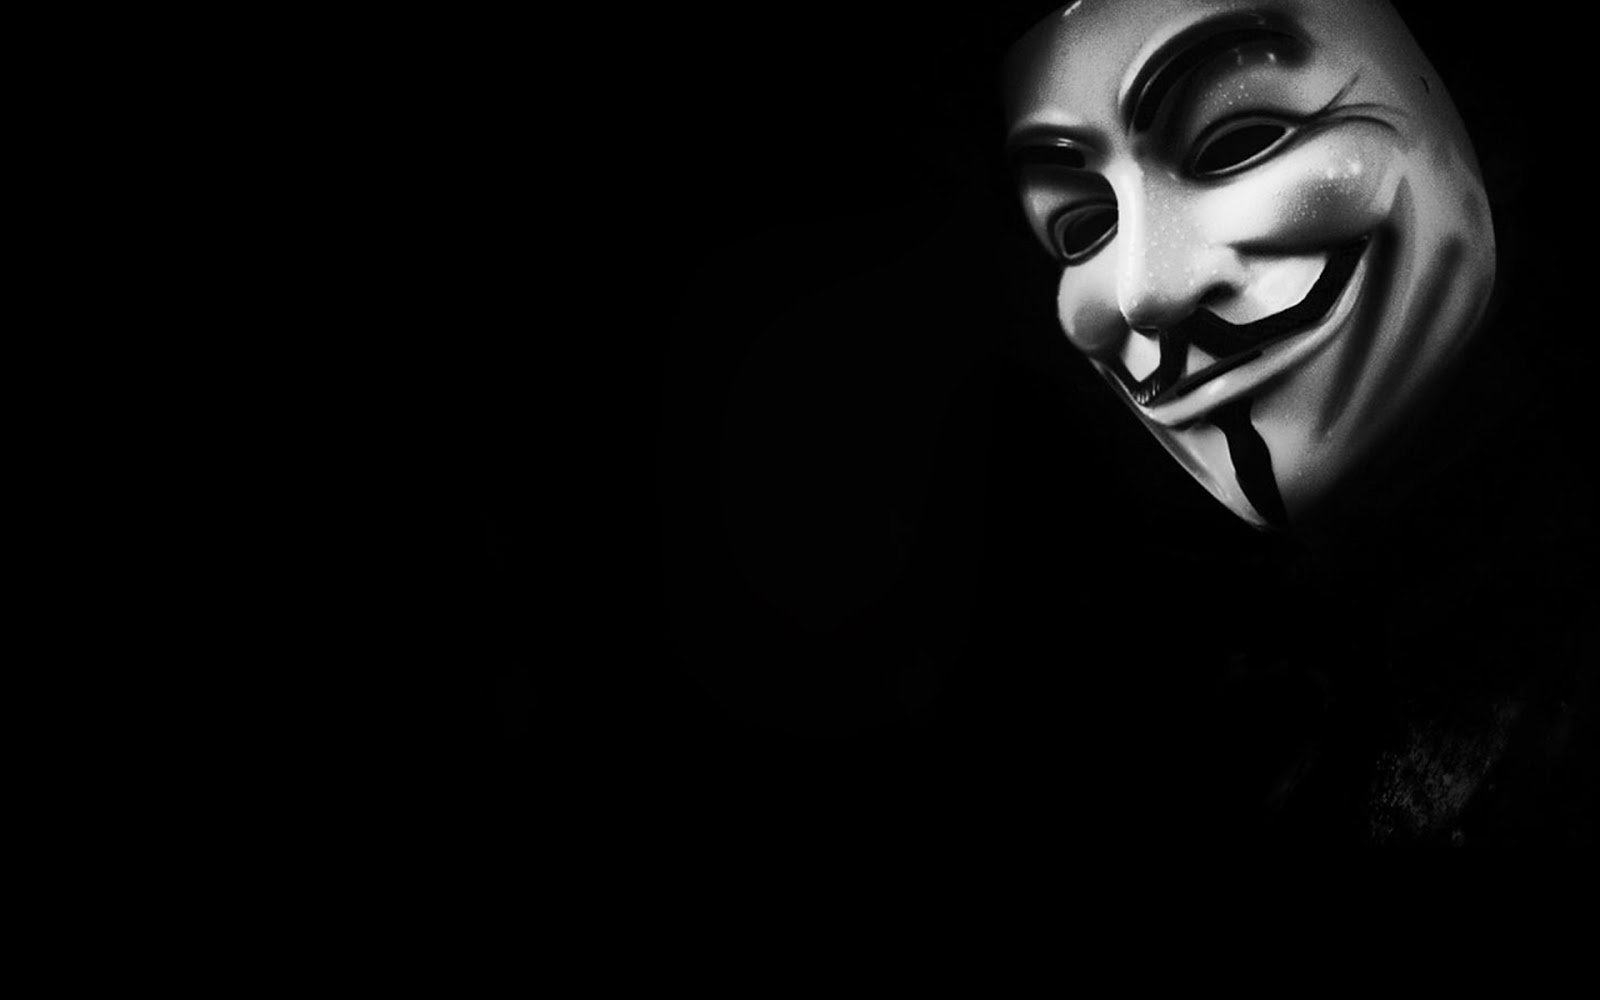 hacker fond d'écran hd 1366x768,noir,visage,ténèbres,tête,noir et blanc